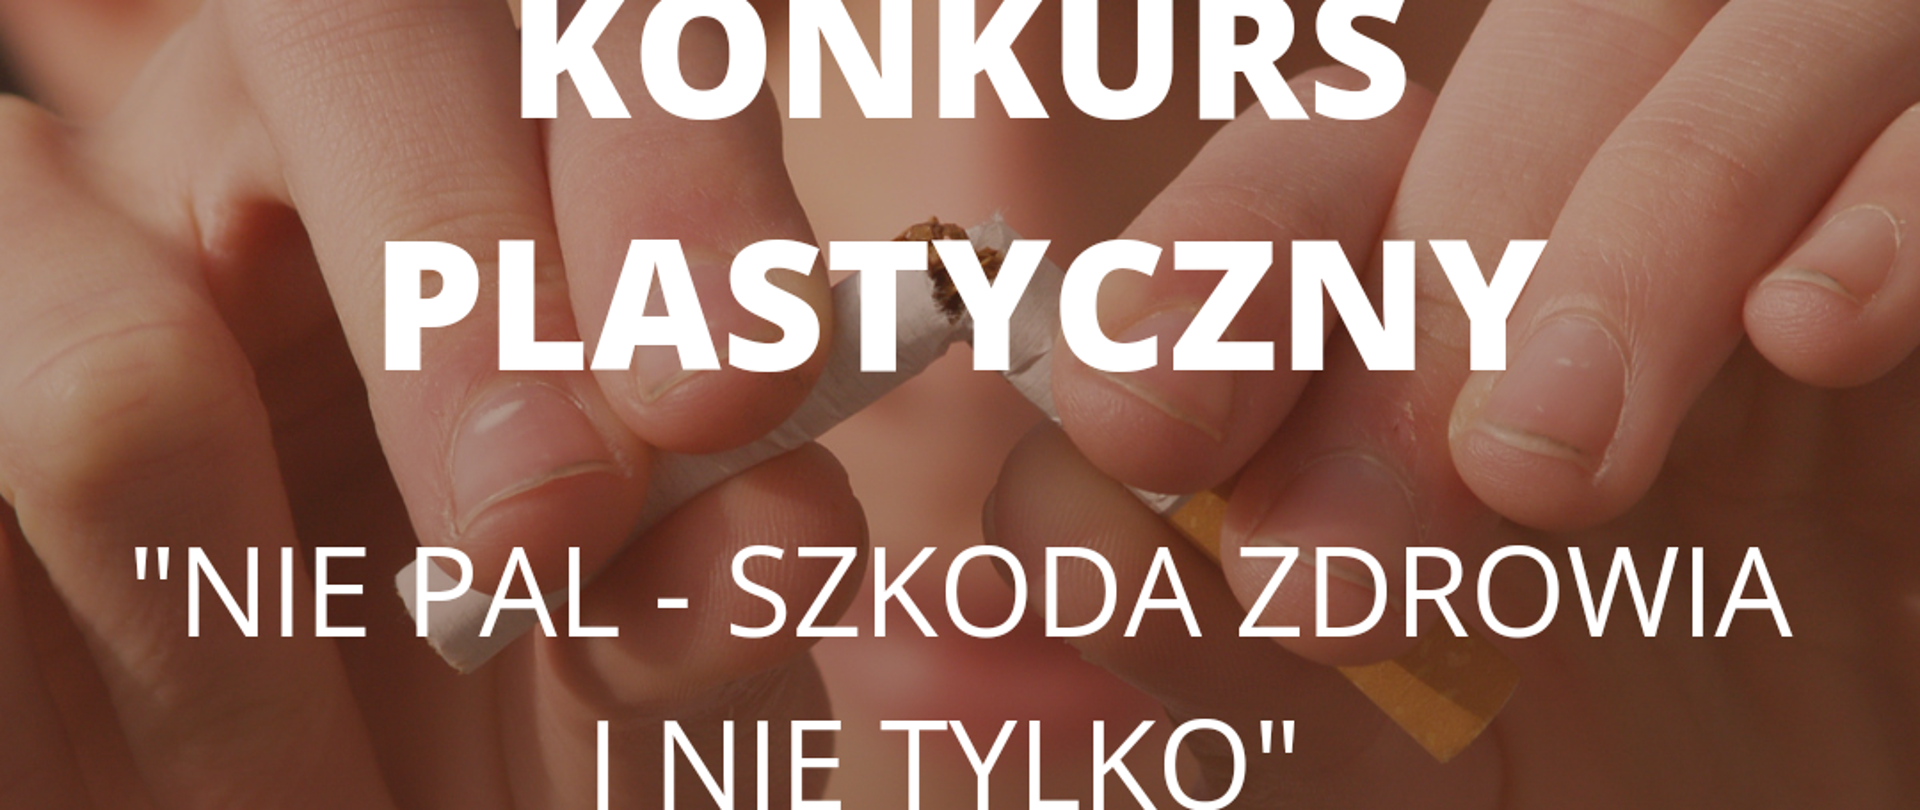 Baner do Konkursu Plastycznego "Nie pal szkoda zdrowia i nie tylko" - przedstawiający dłonie przełamujące papierosa